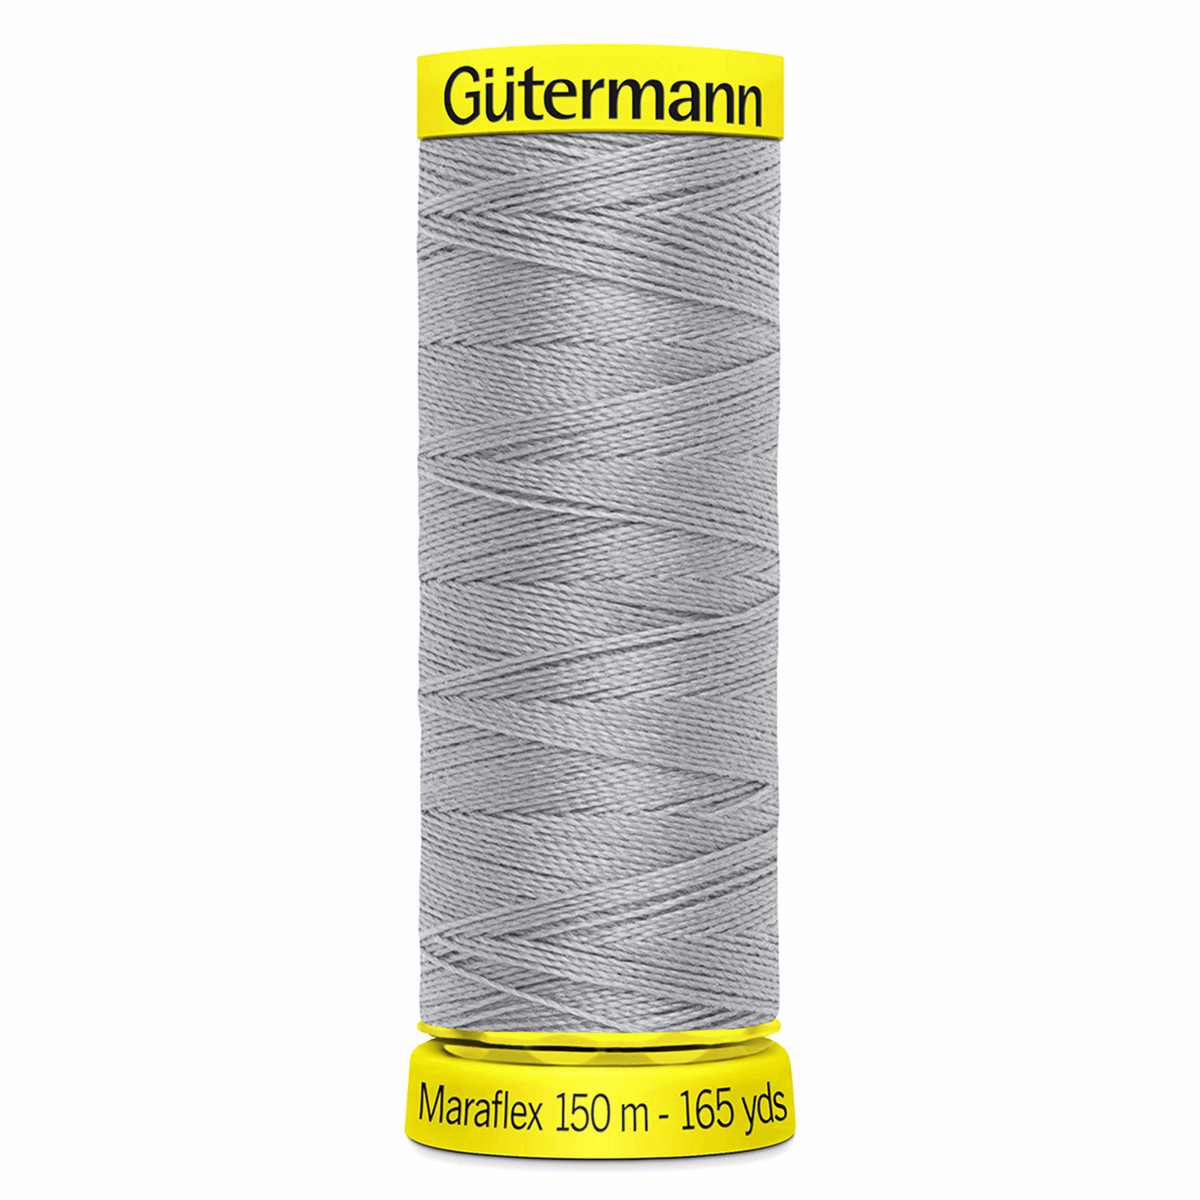 Gutermann Maraflex Elastic Sewing Thread 150m Mid Silver 38